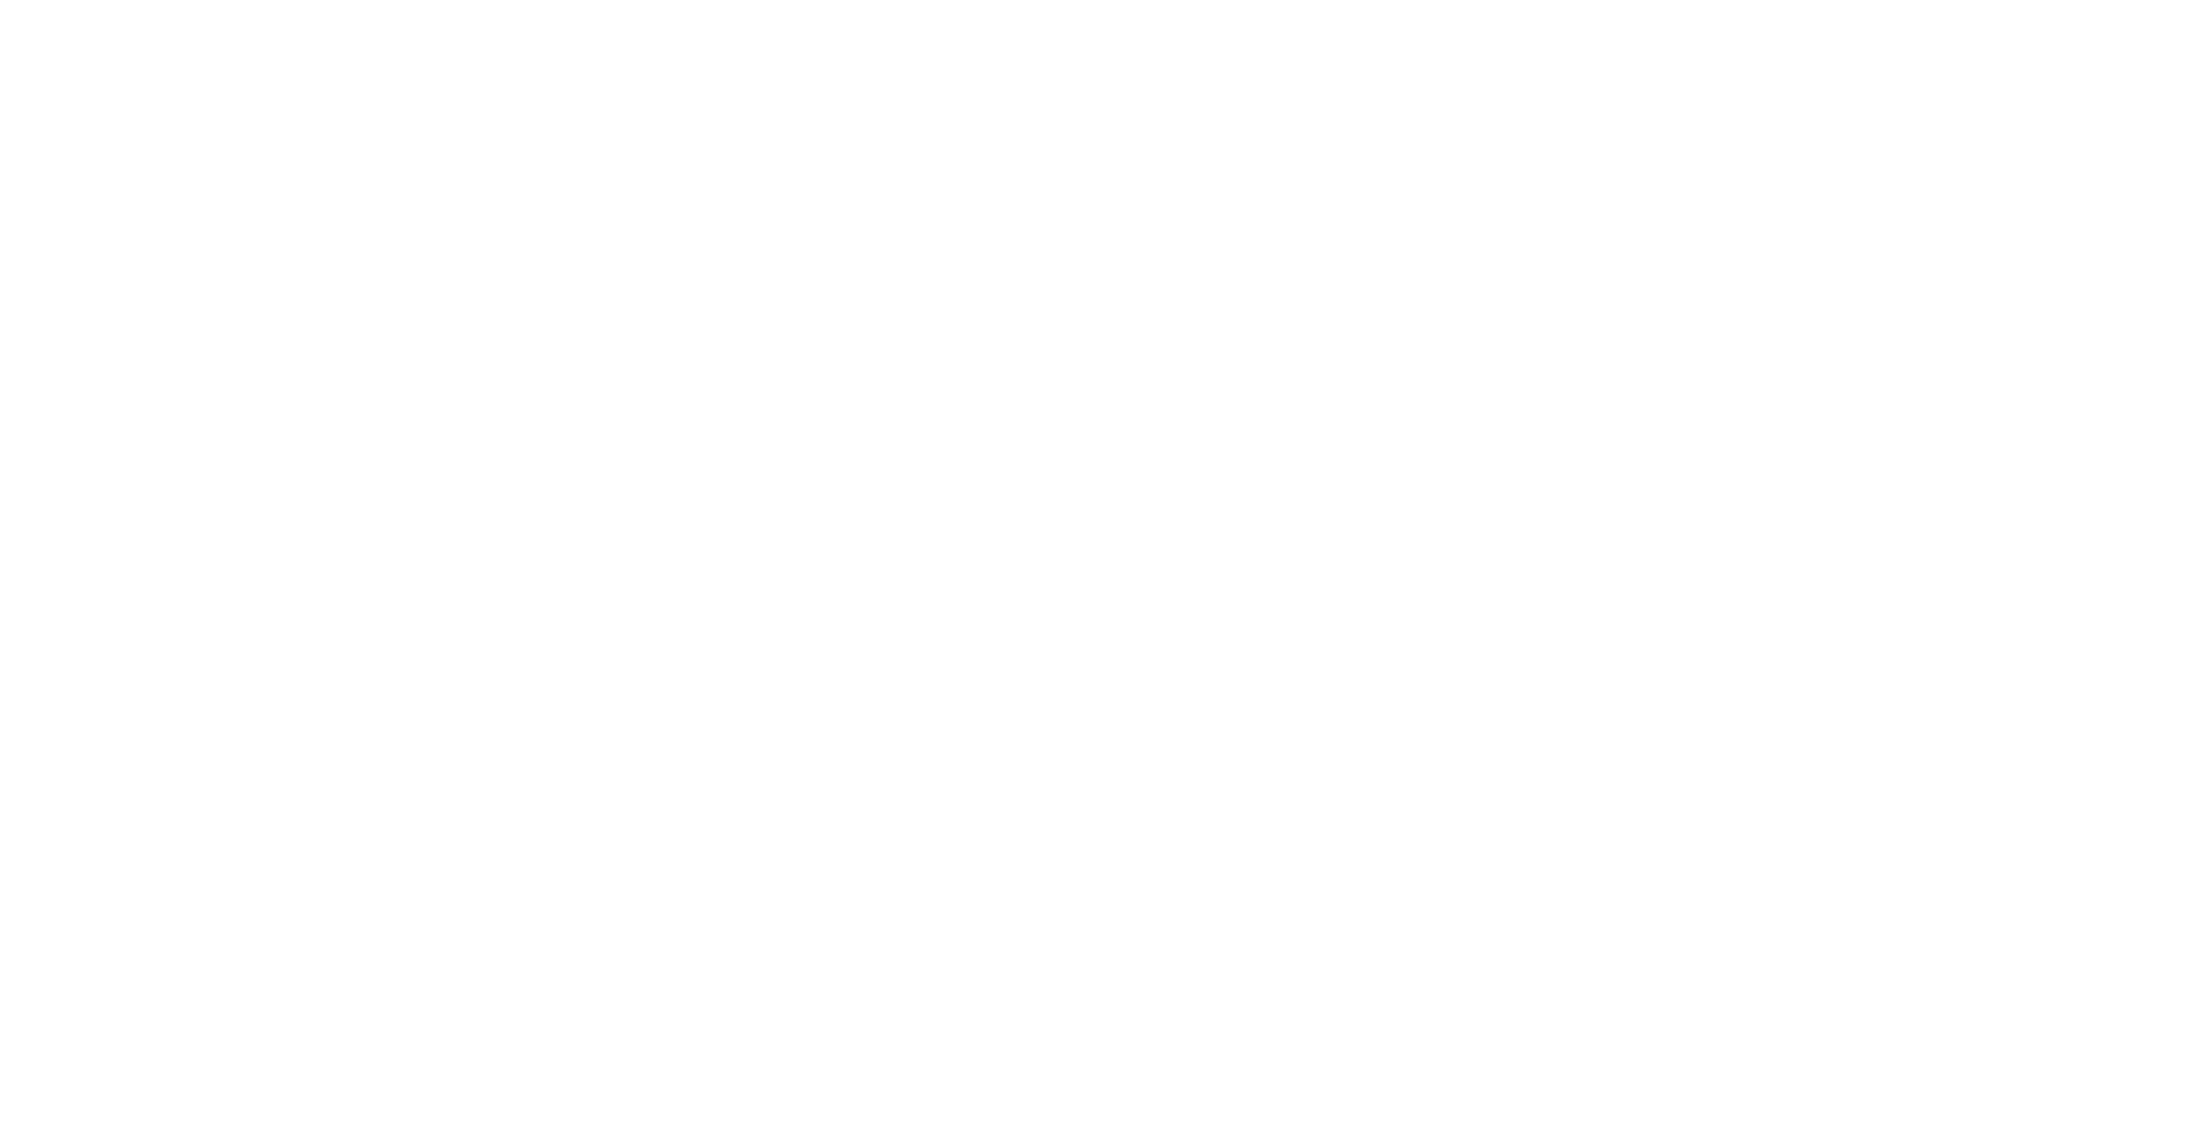 Flux Version 2.2.0 Released